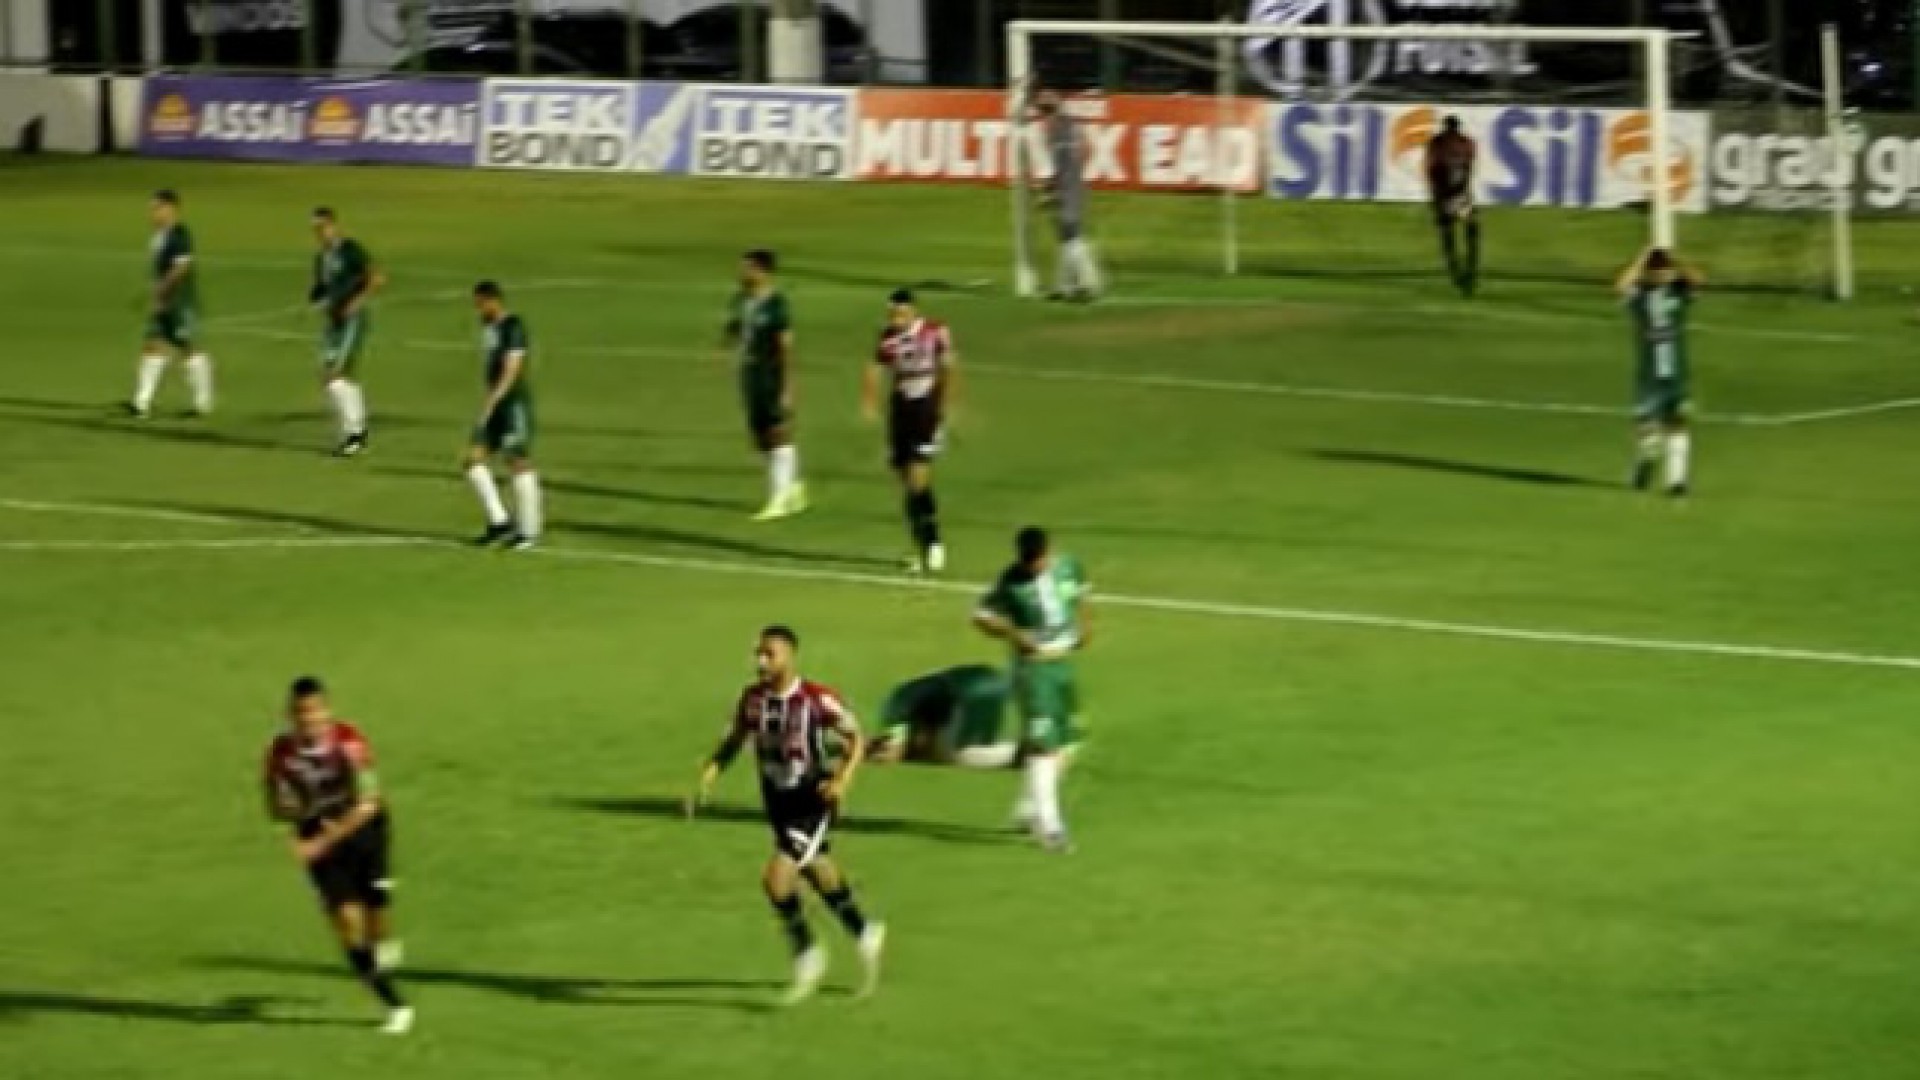 Gol do Ferrão foi marcado por Joedson, contra, nos acréscimos do segundo tempo, que tentou cortar cruzamento da direita (Foto: REPRODUÇÃO)